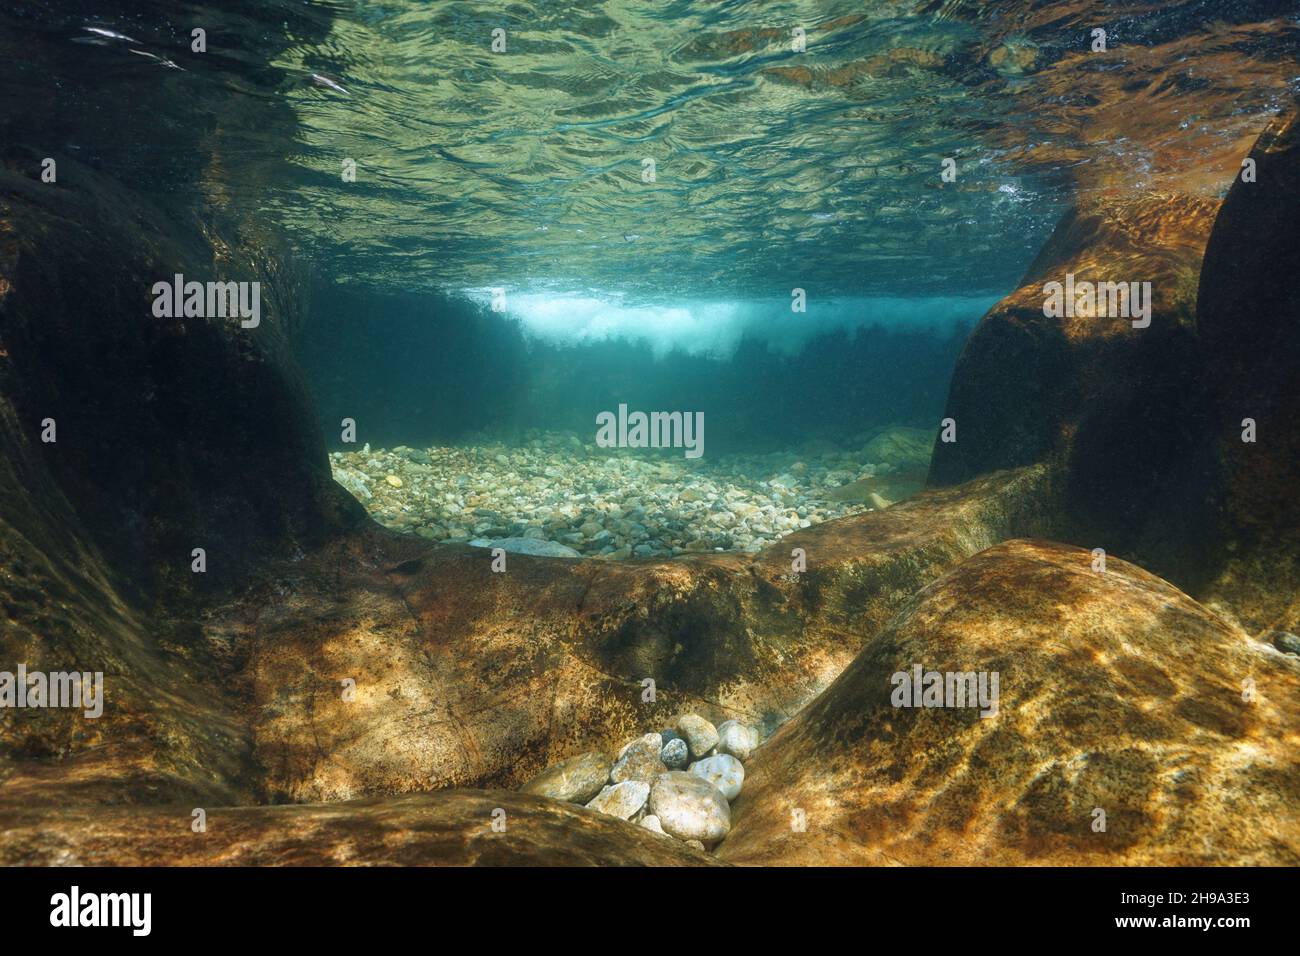 Ruscello subacqueo con acqua limpida e fondale roccioso, scena naturale, fiume Tambue, Spagna, Galizia Foto Stock